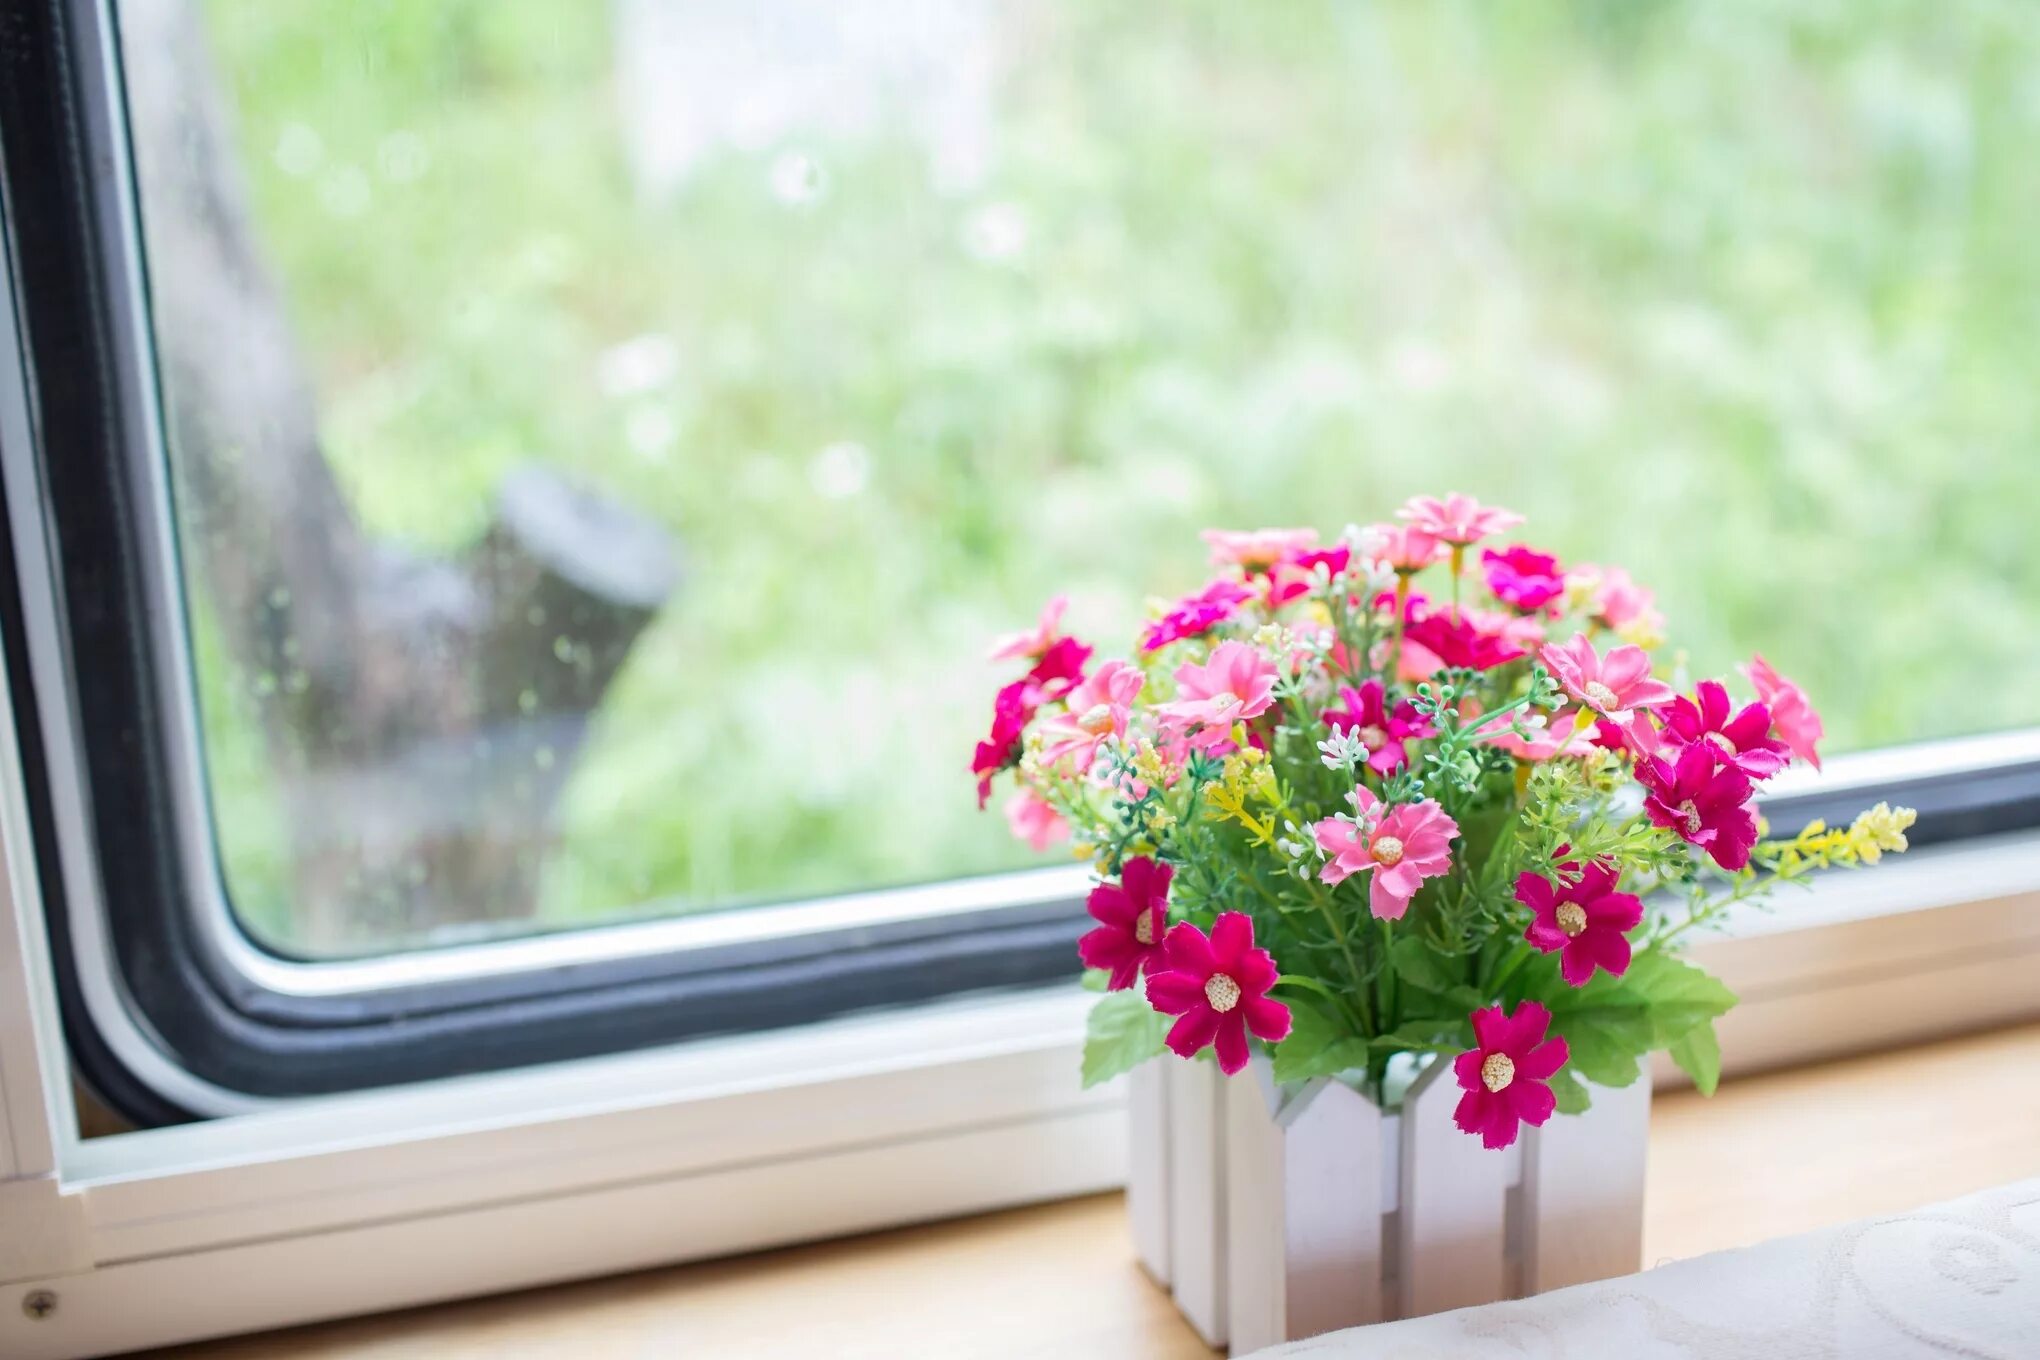 Indoor flowers. Цветы на подоконнике. Подоконник с цветами. Цветок в горшке на окне. Красивый подоконник с цветами.